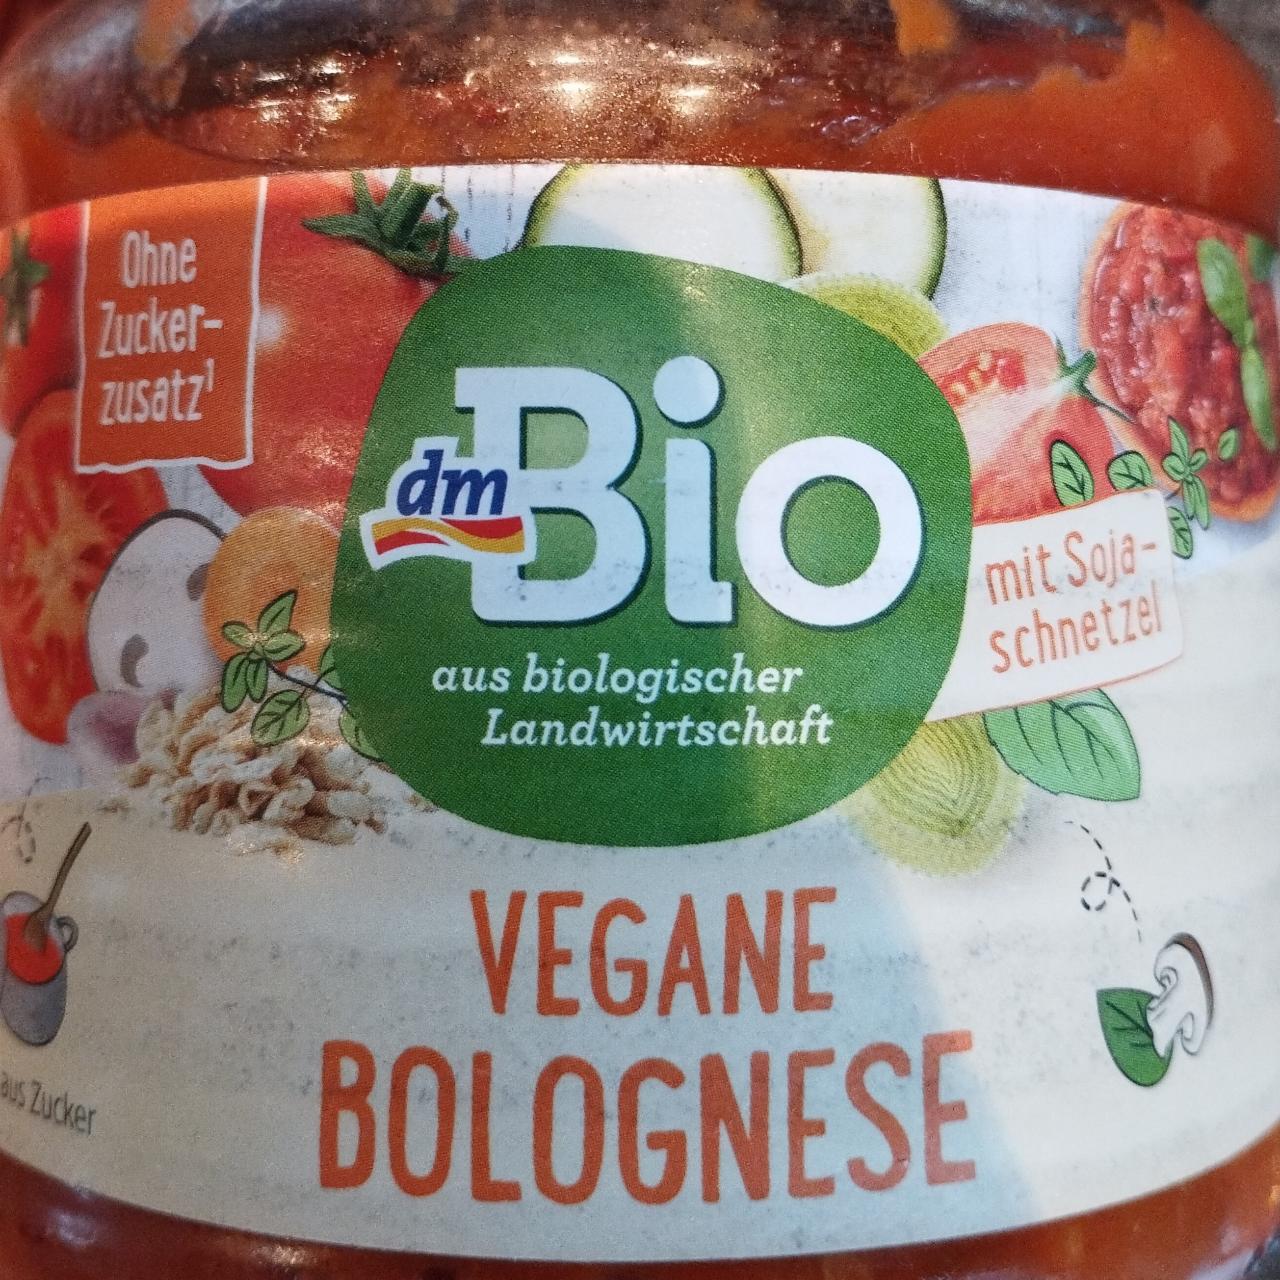 Képek - Vegán bolognese dmBio